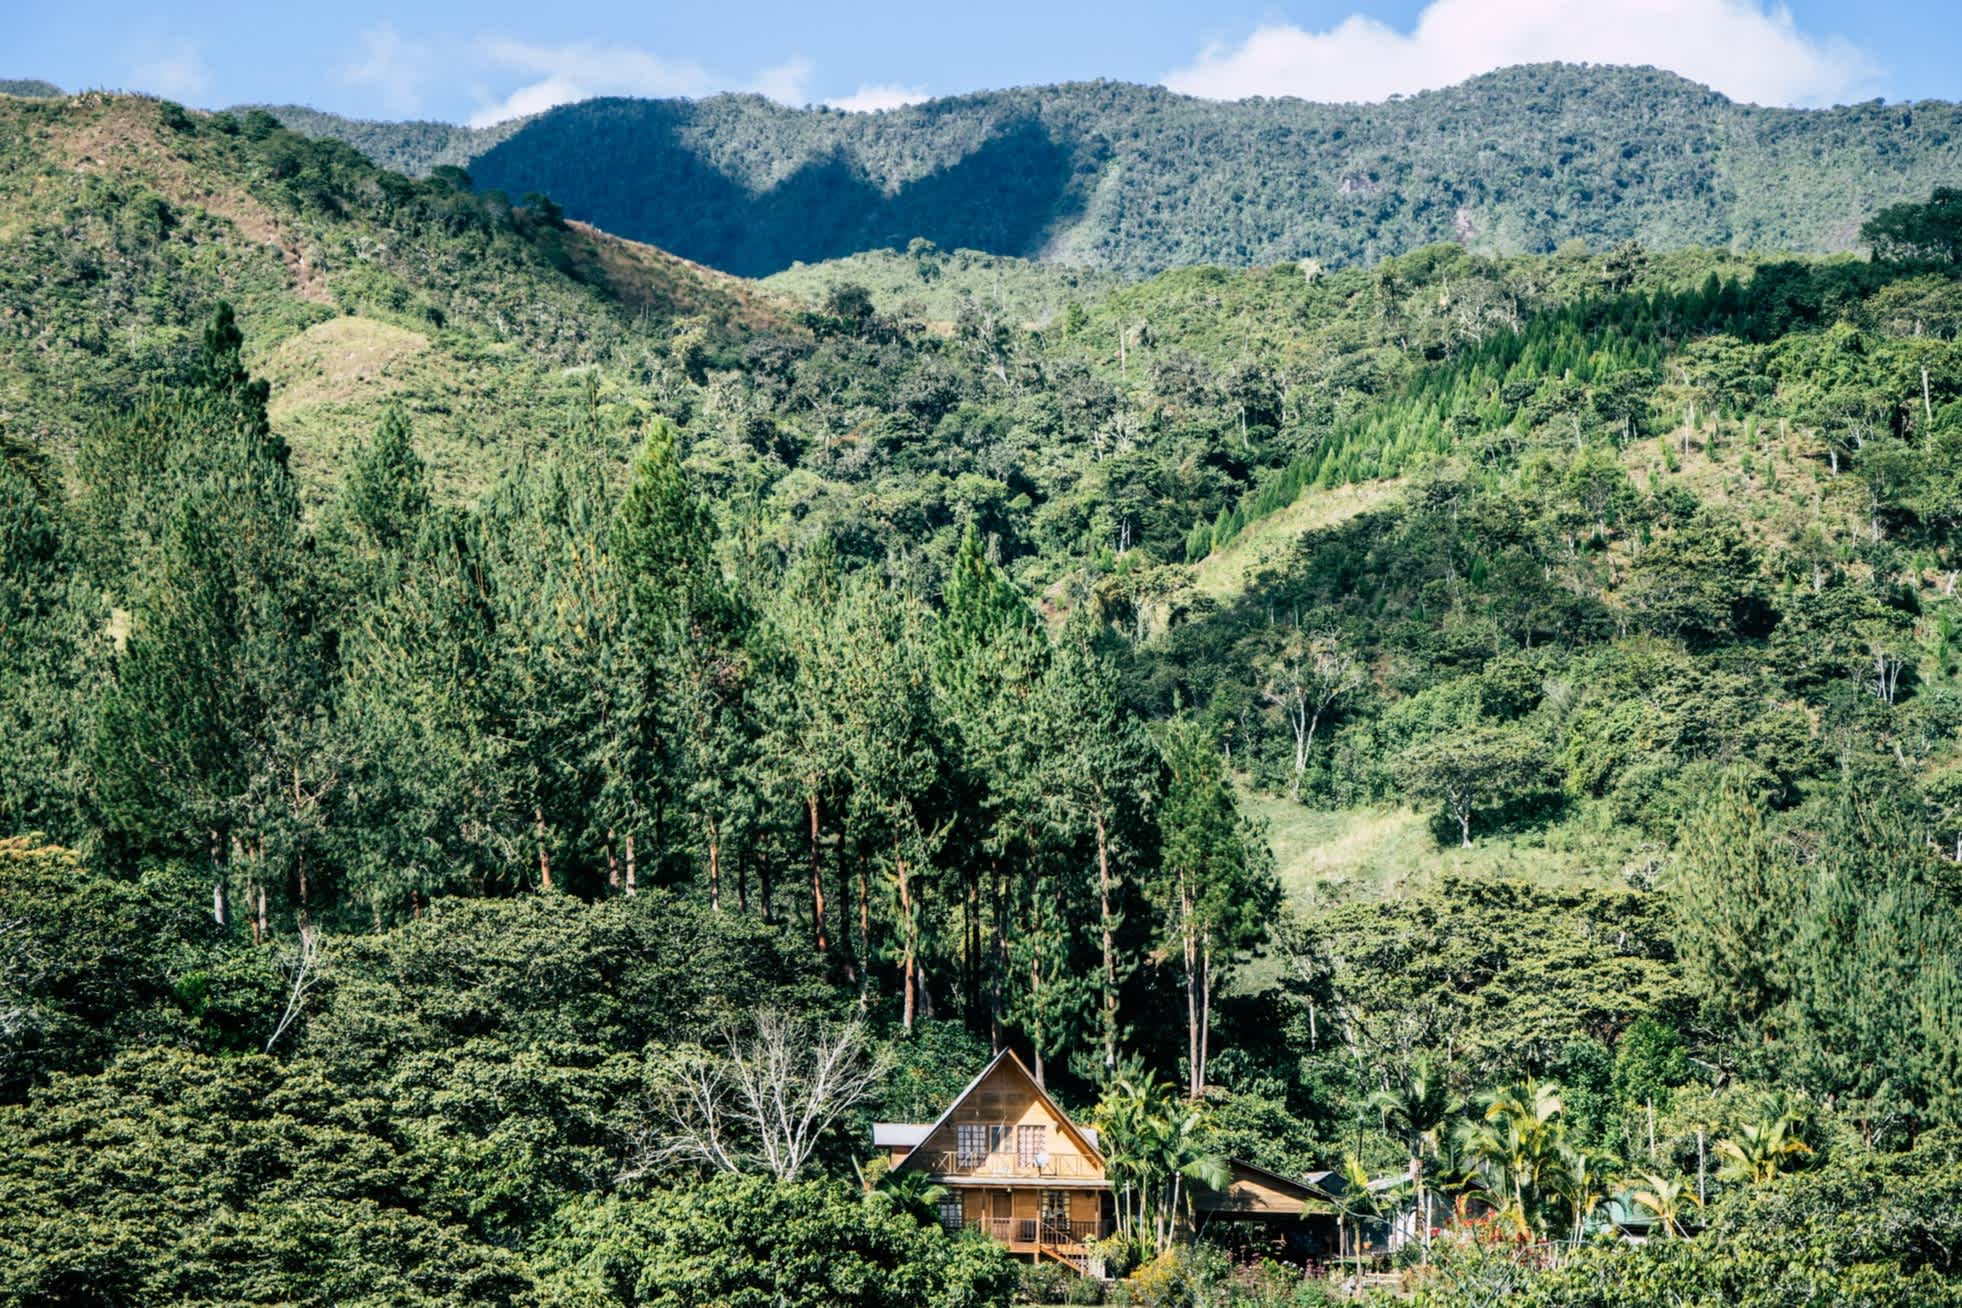 Blick auf ein Haus inmitten einer grünen Wald- und Berglandschaft